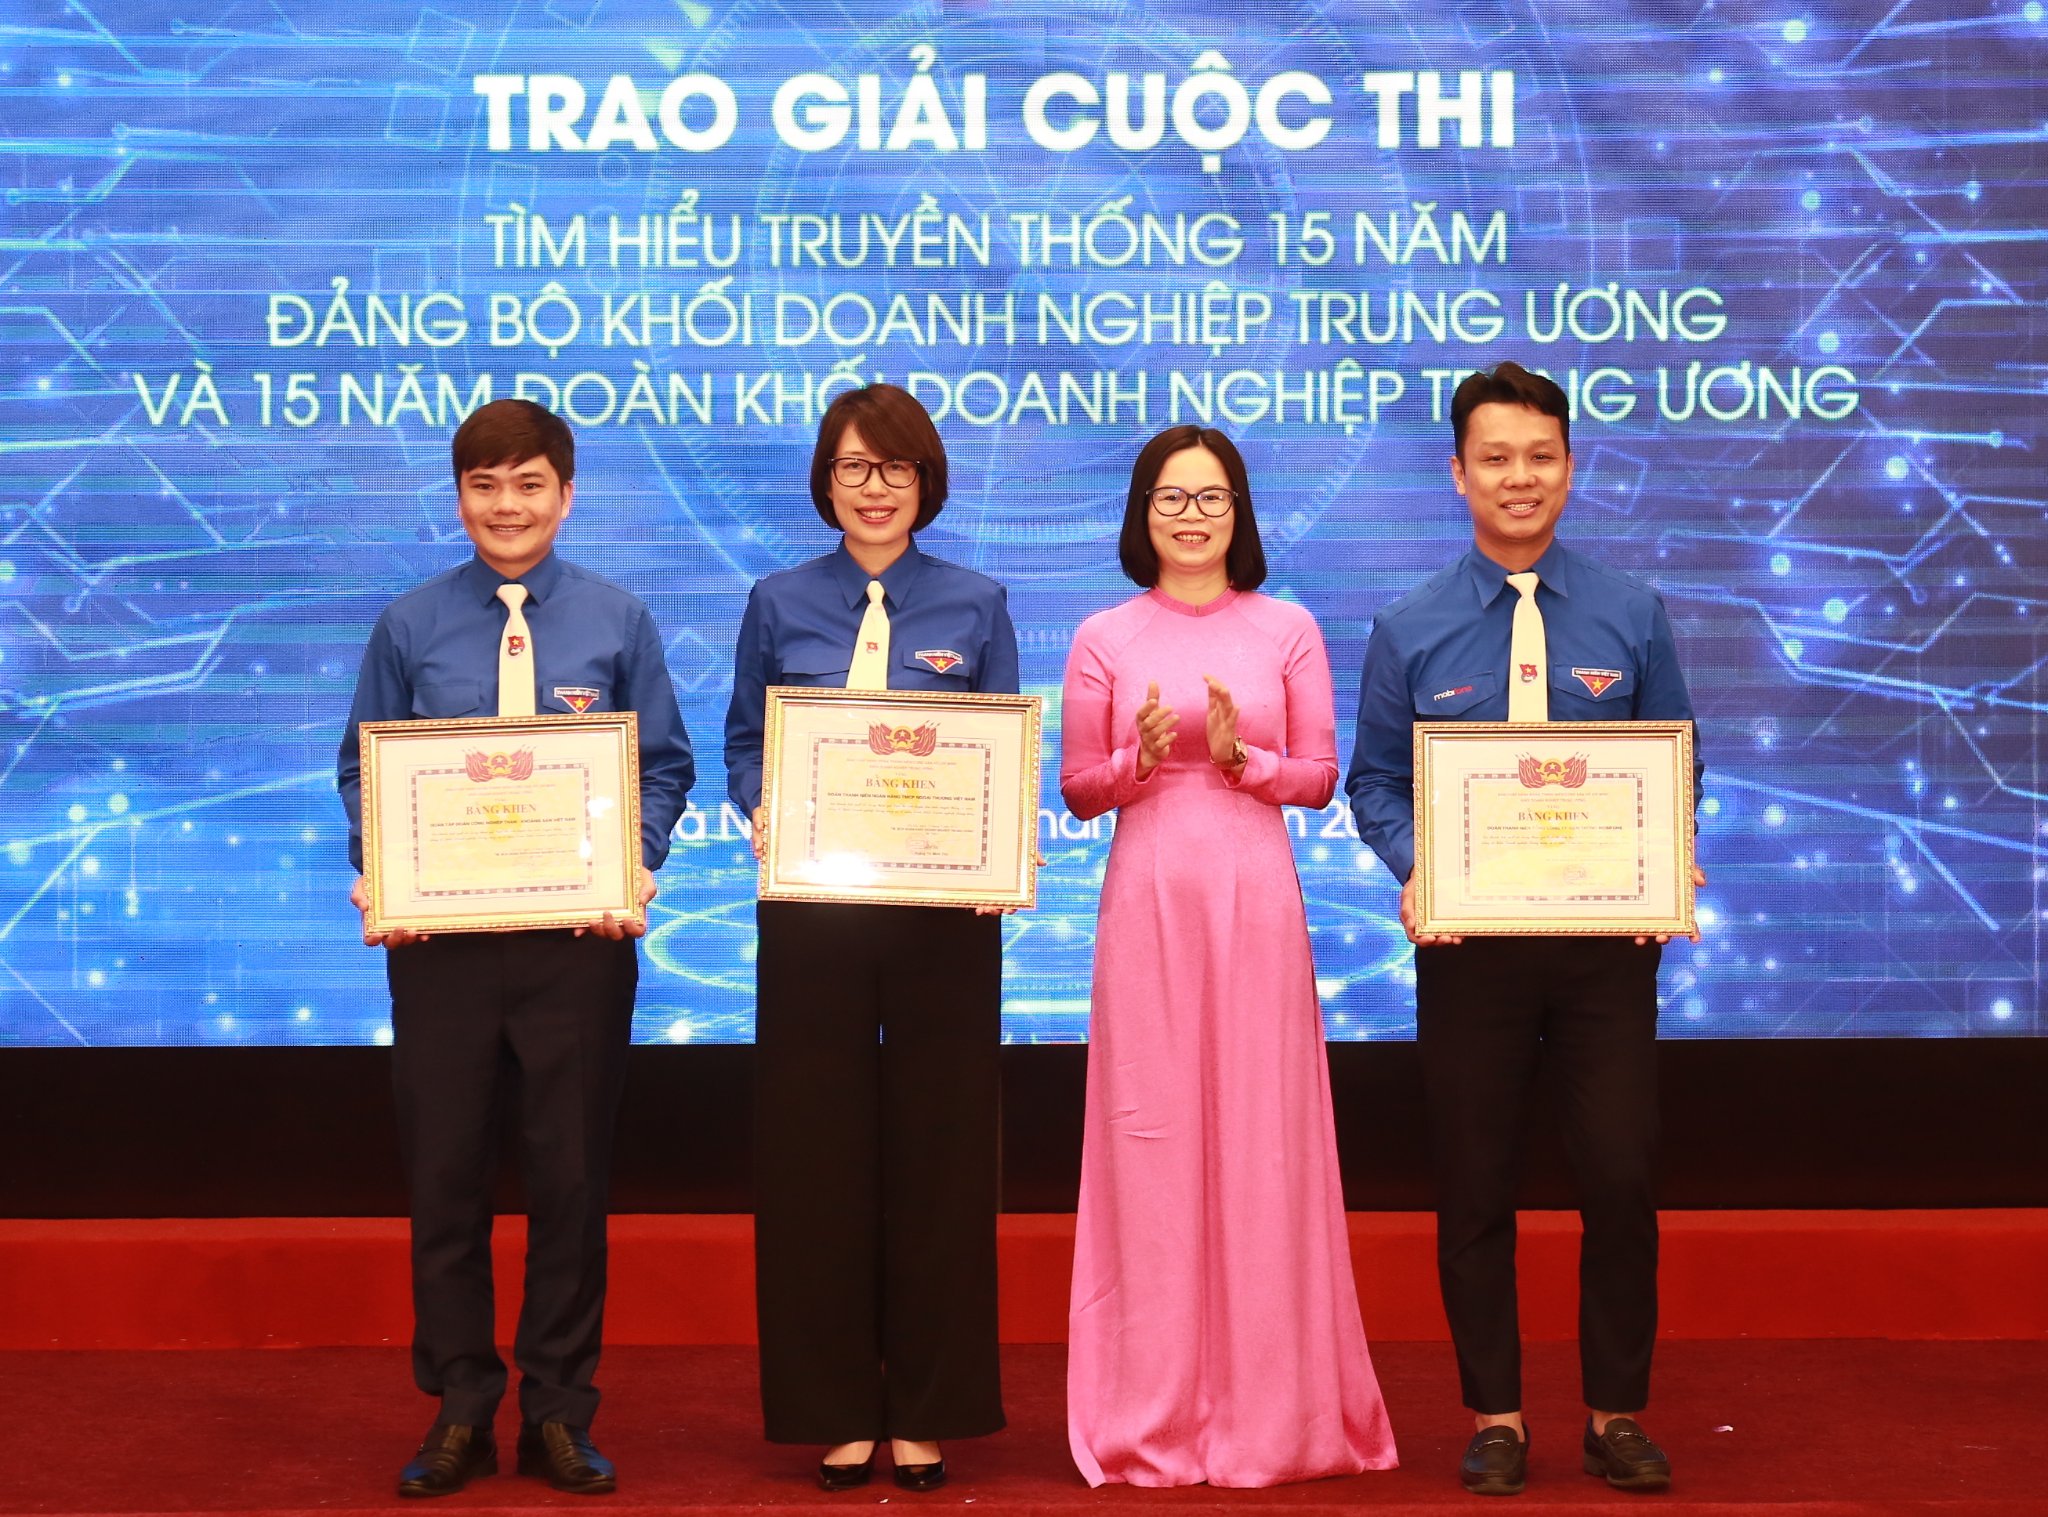 Đồng chí Hoàng Thị Minh Thu, Ủy viên BTV Trung ương Đoàn, Ủy viên BCH Đảng bộ Khối, Bí thư Đoàn Khối Doanh nghiệp Trung ương trao giải cho các tập thể có thành tích xuất sắc Cuộc thi.